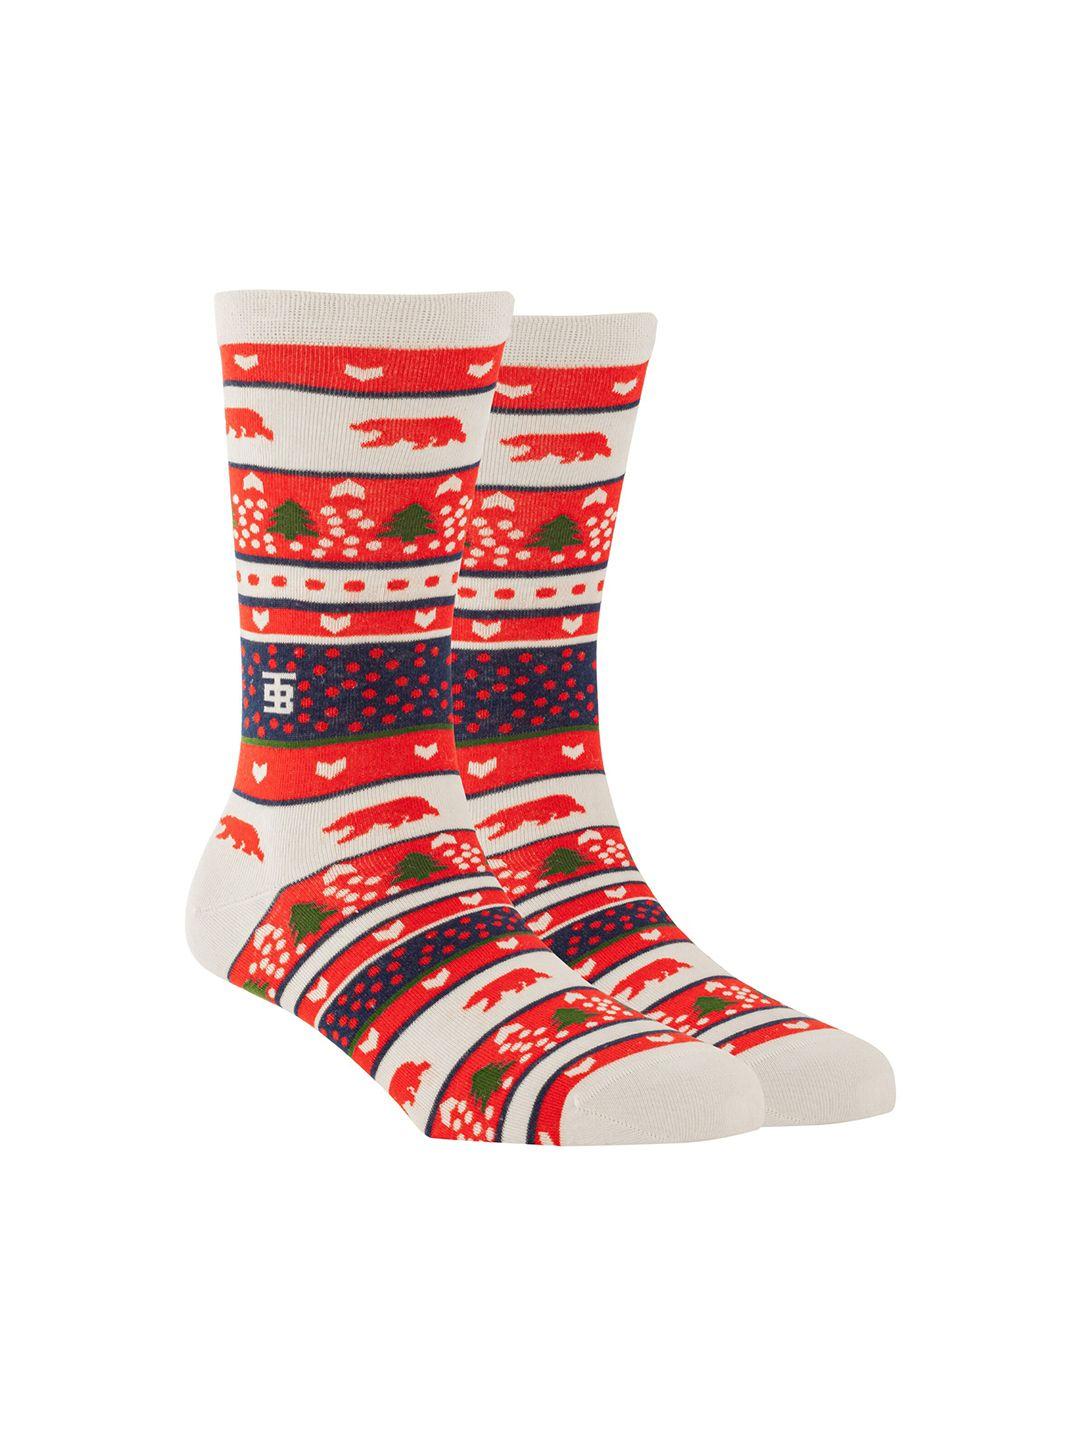 socksoho men white & red patterned calf-length socks